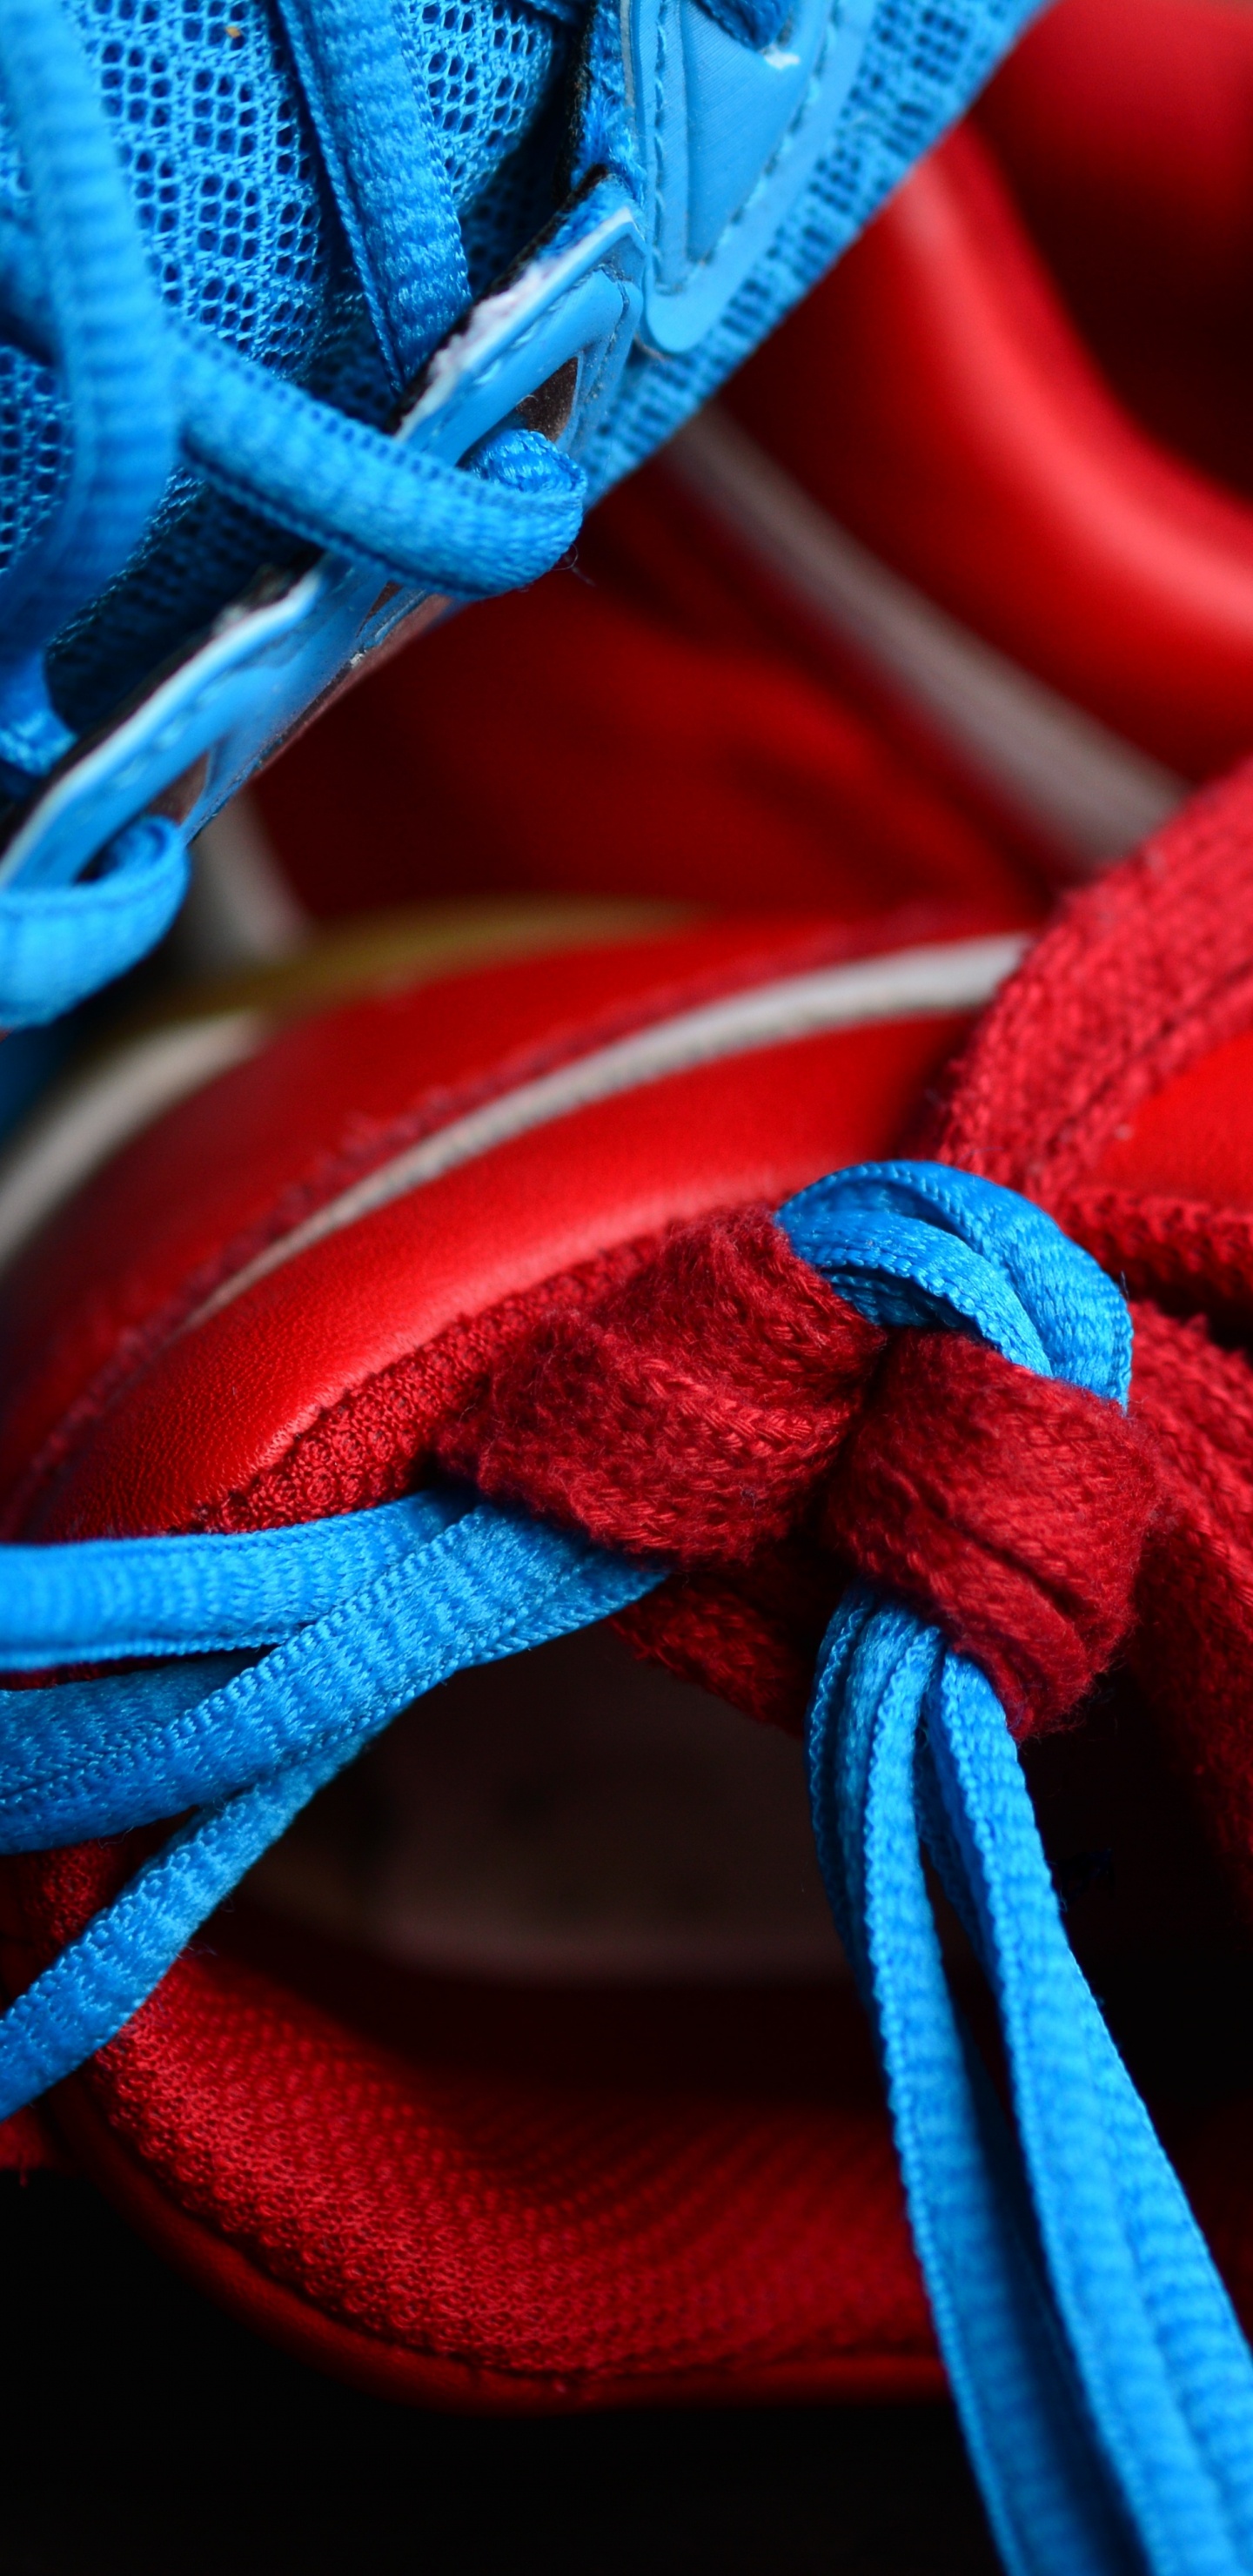 Zapatos Rojos y Azules Con Cordones. Wallpaper in 1440x2960 Resolution